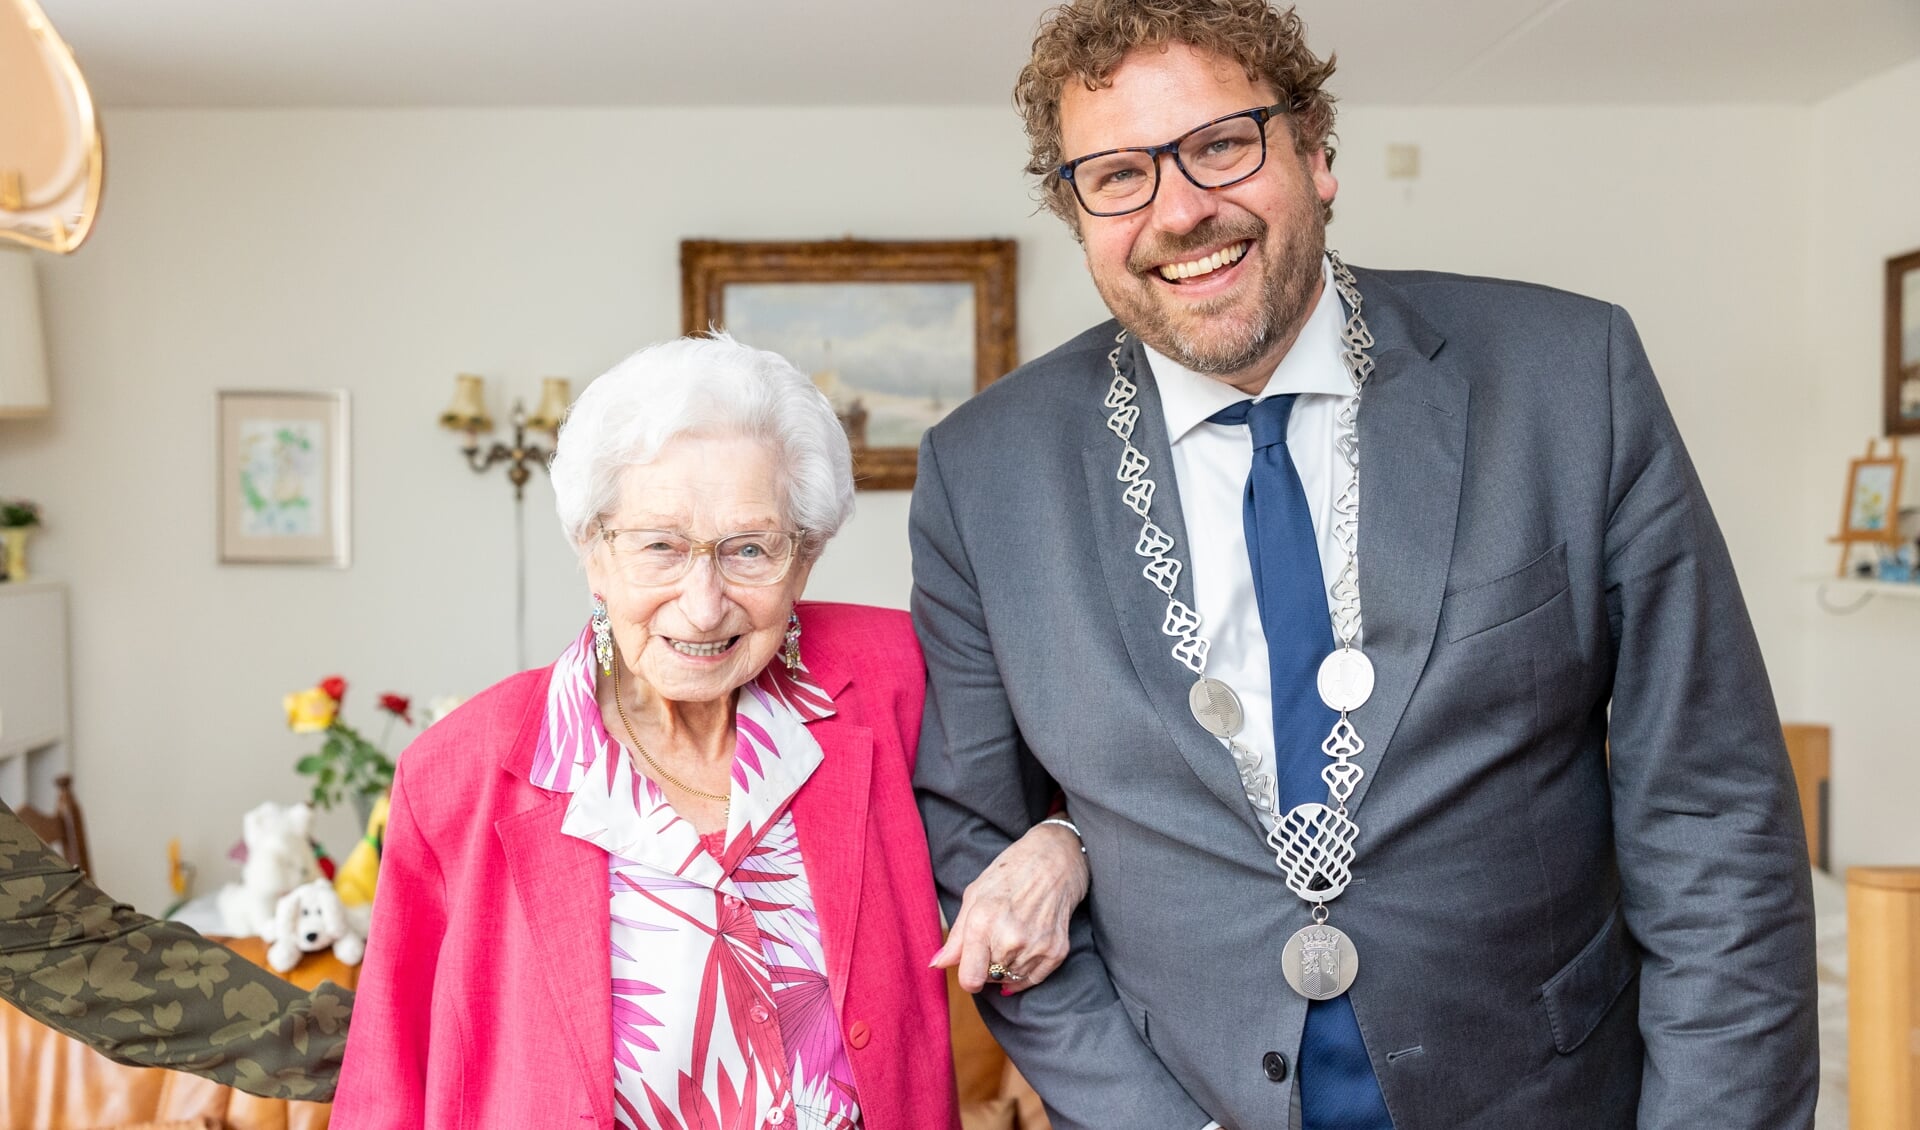 Eeuwlinge mevrouw Smit-Bleeker arm in arm met burgemeester Maarten Poorter. 'Mijn verjaardag is een onvergetelijke dag geworden.'